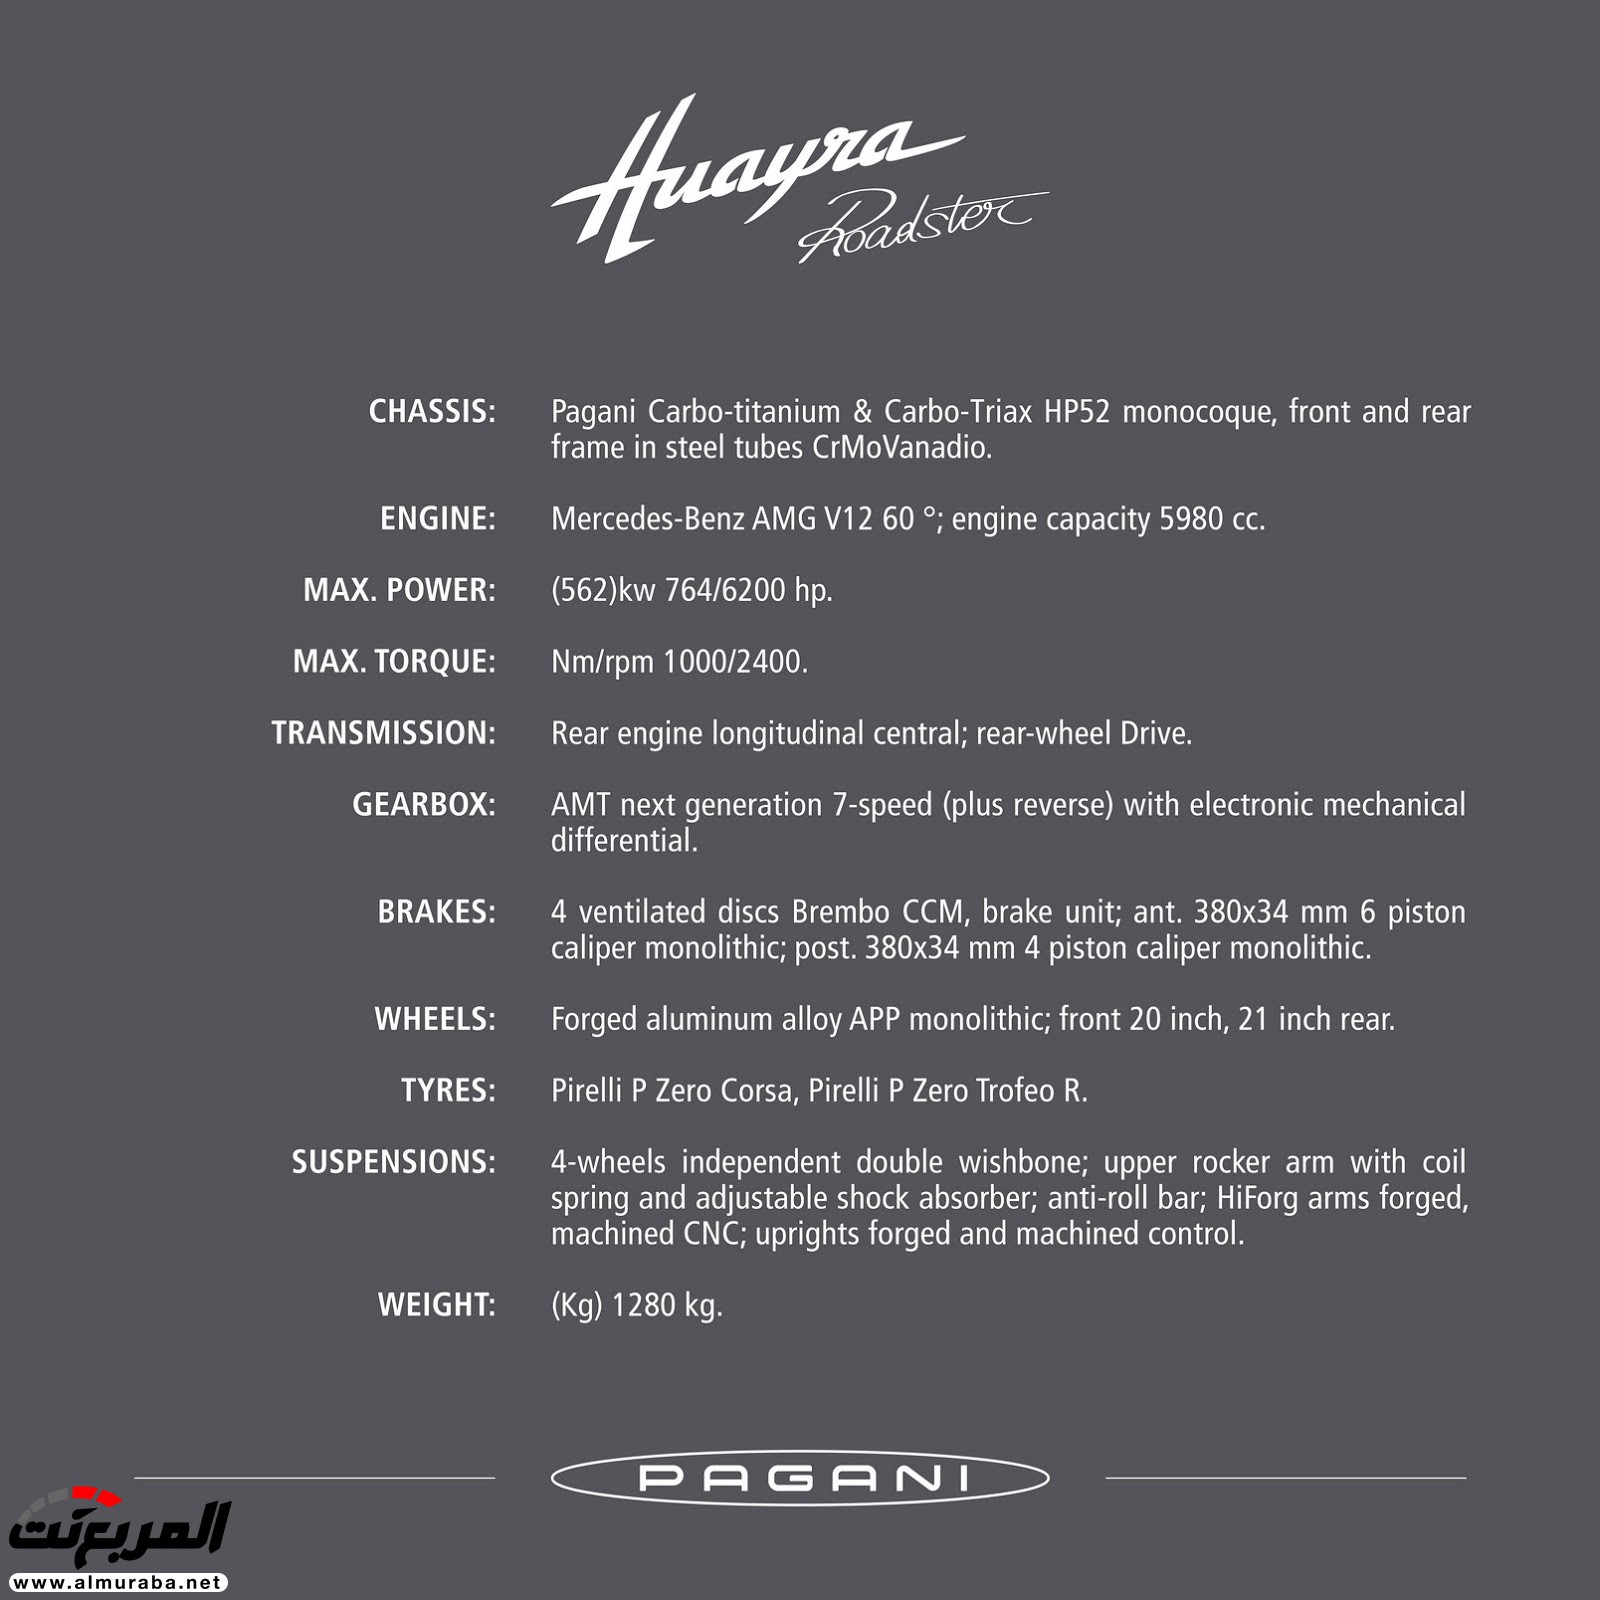 "باجاني" هوايرا رودستر يكشف عنها متألقة بسقف مكشوف وقوة 754 حصان Pagani Huayra Roadster 1